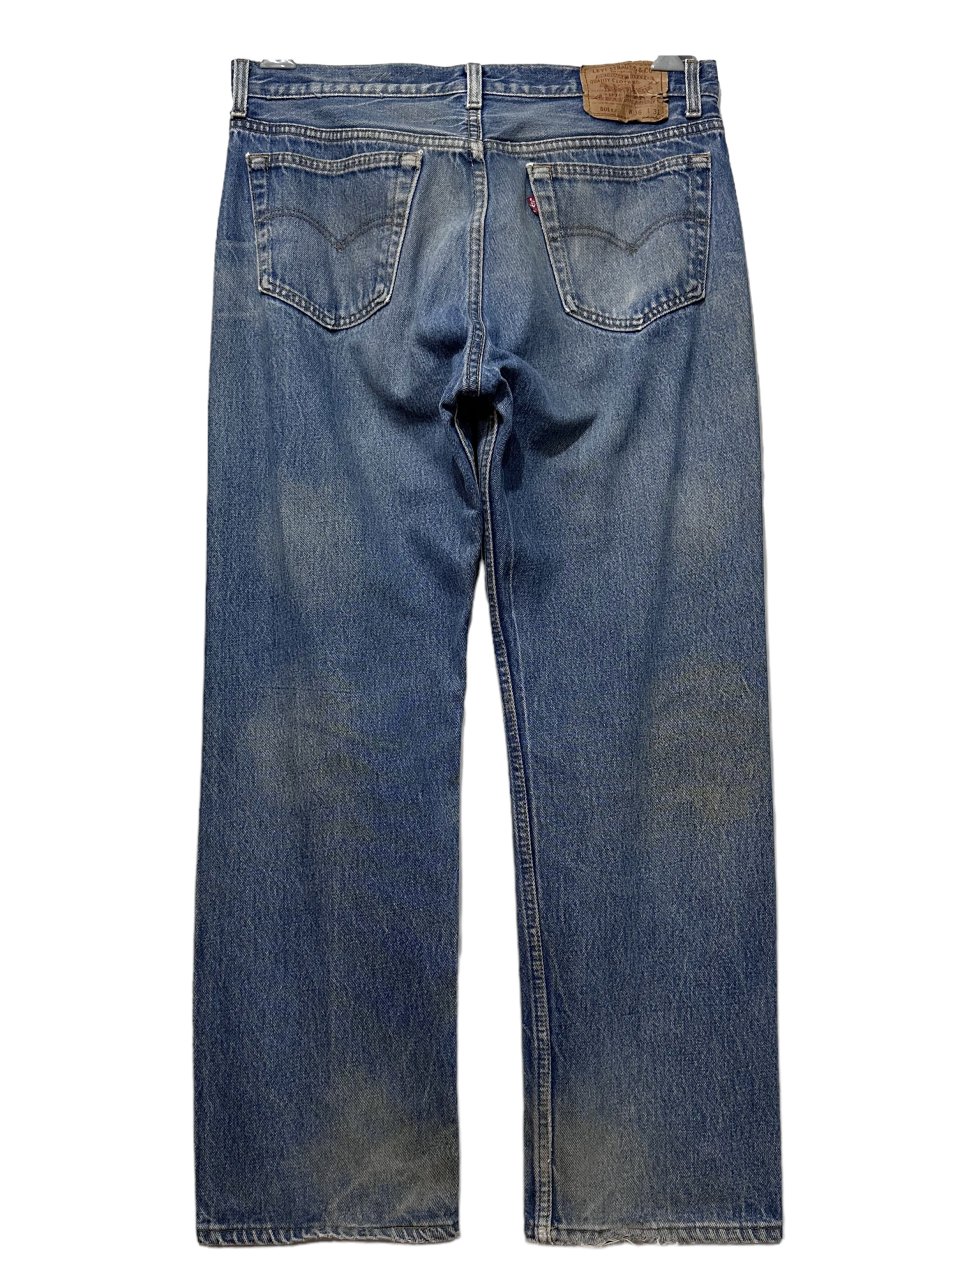 USA製 93年 Levi's 501 Denim Pants 薄青 W34×L28 90s